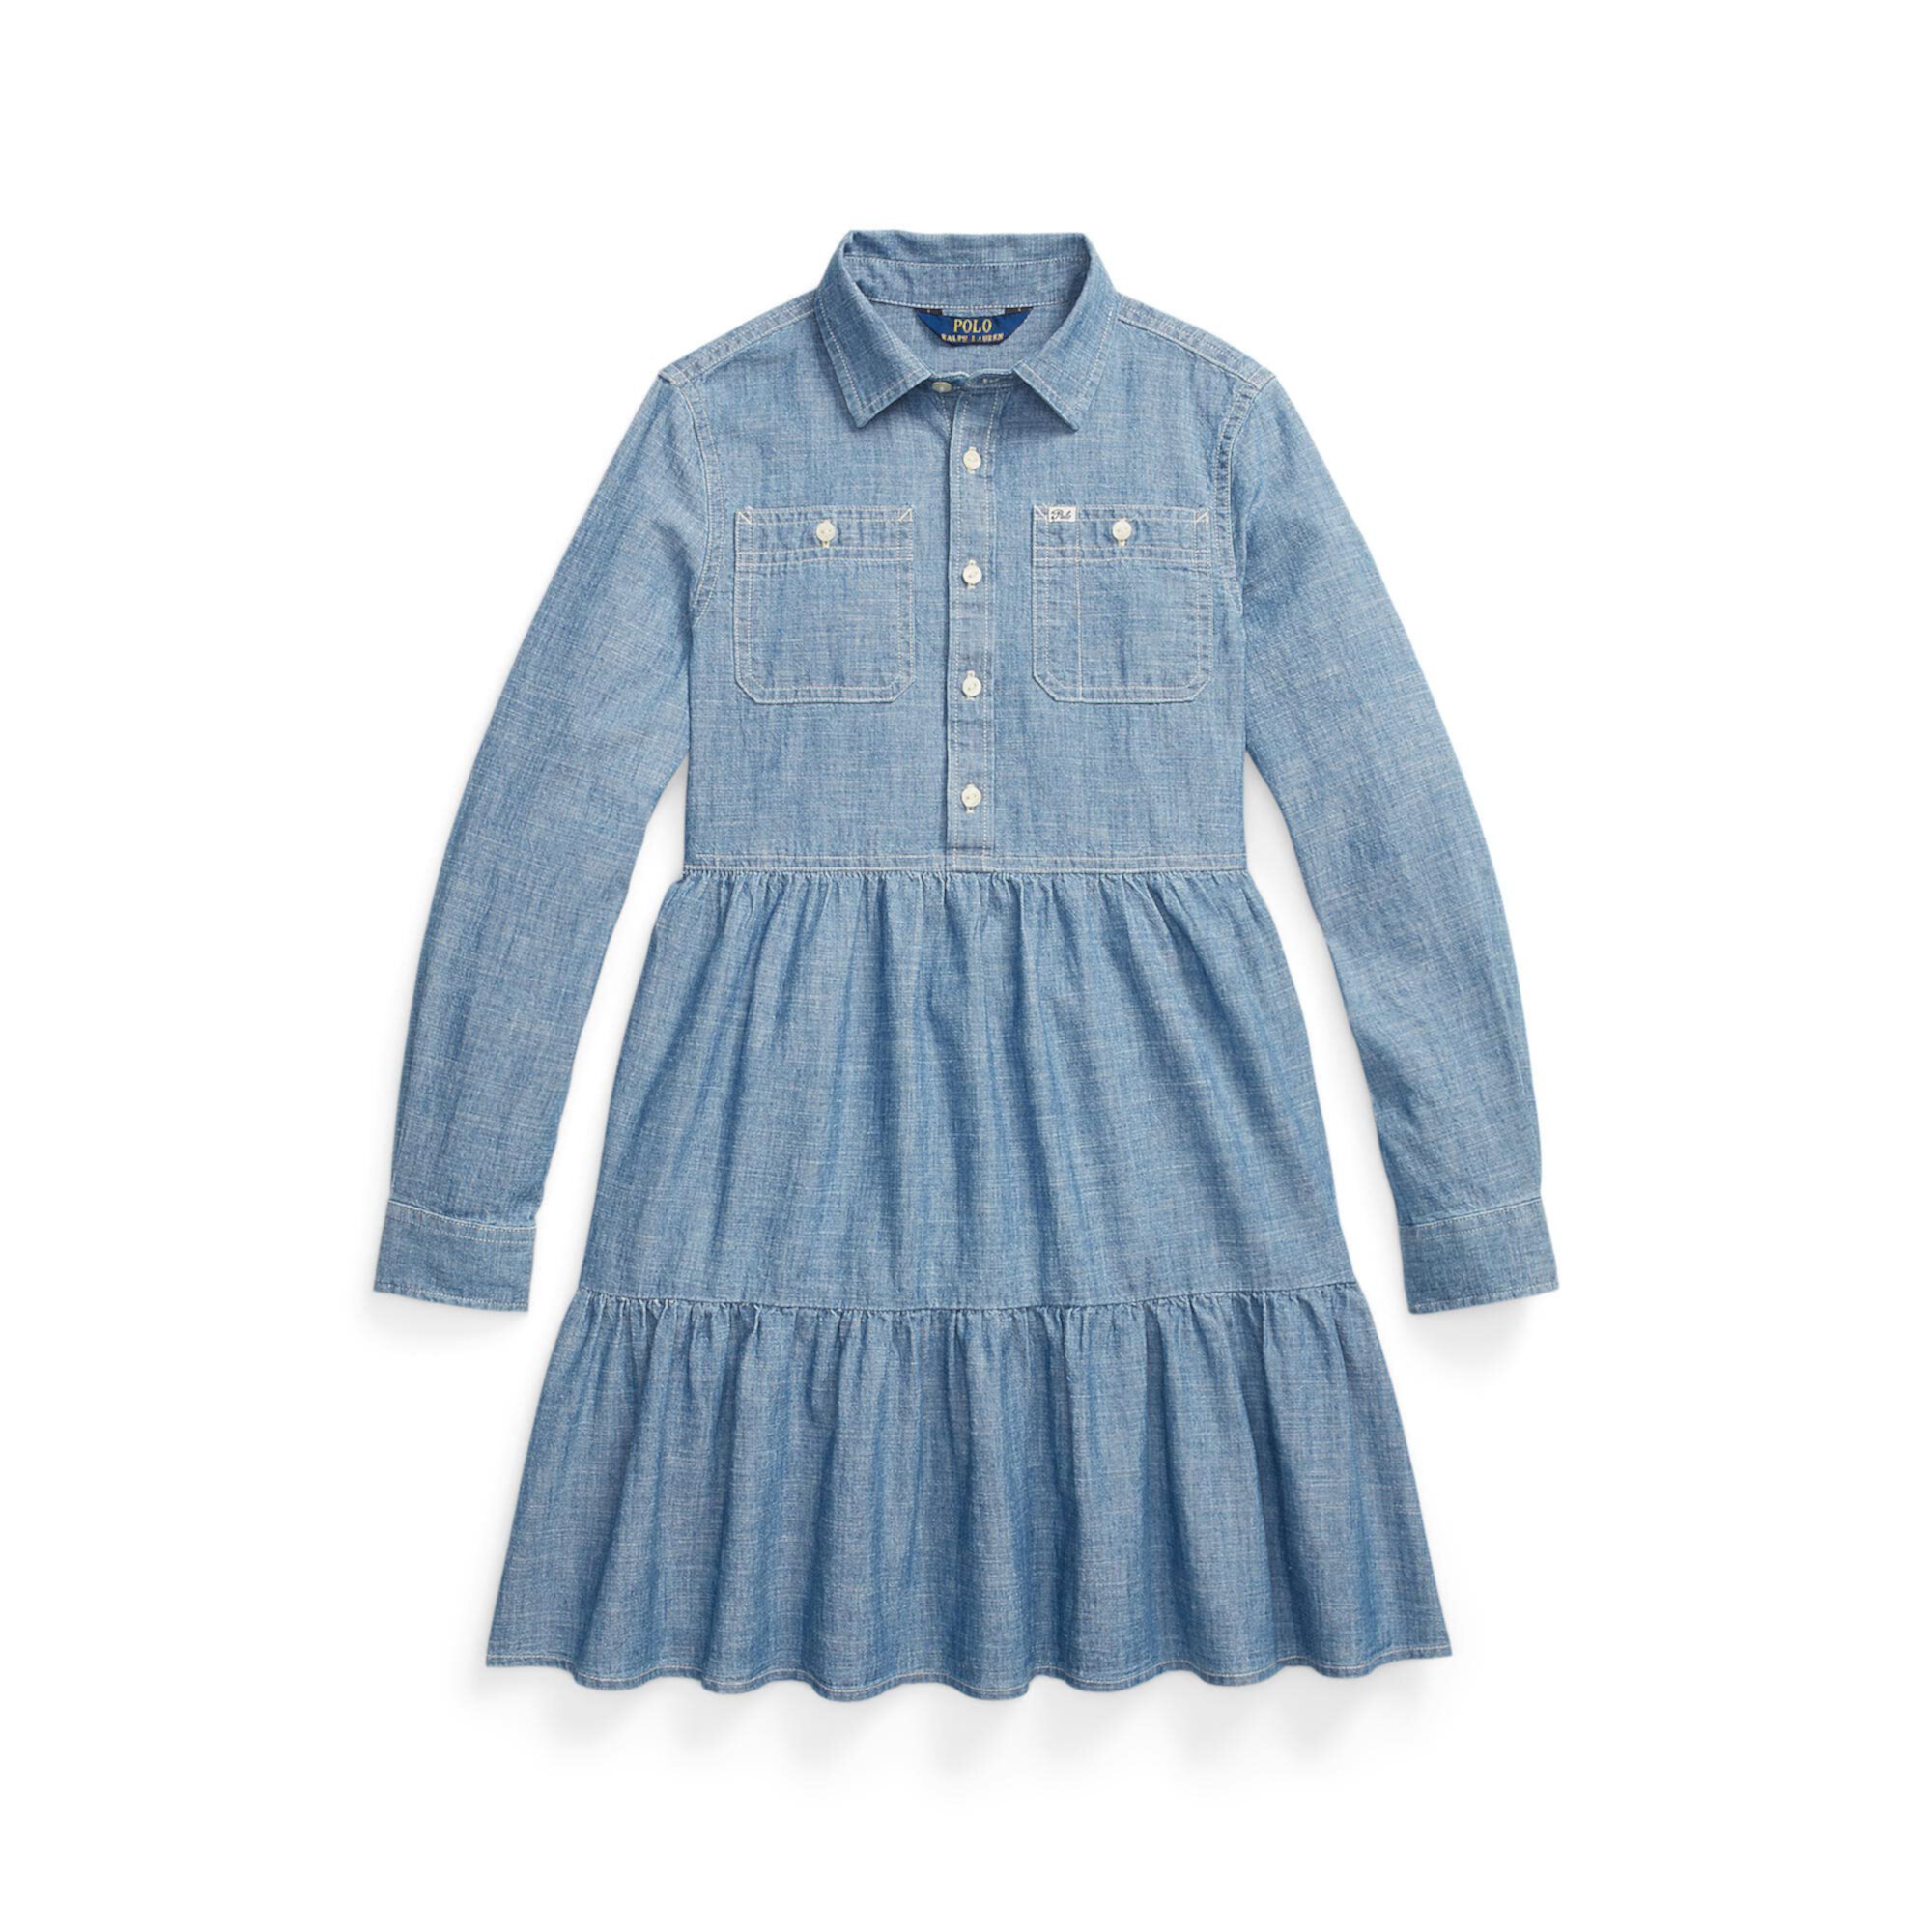 Многоуровневое платье-рубашка из шамбре (для больших детей) Polo Ralph Lauren